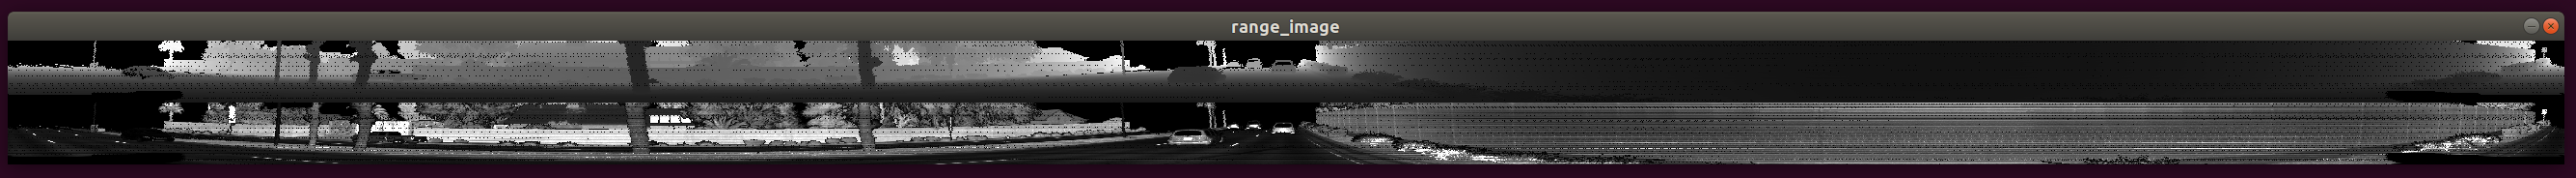 IMAGES/range_image_1.png